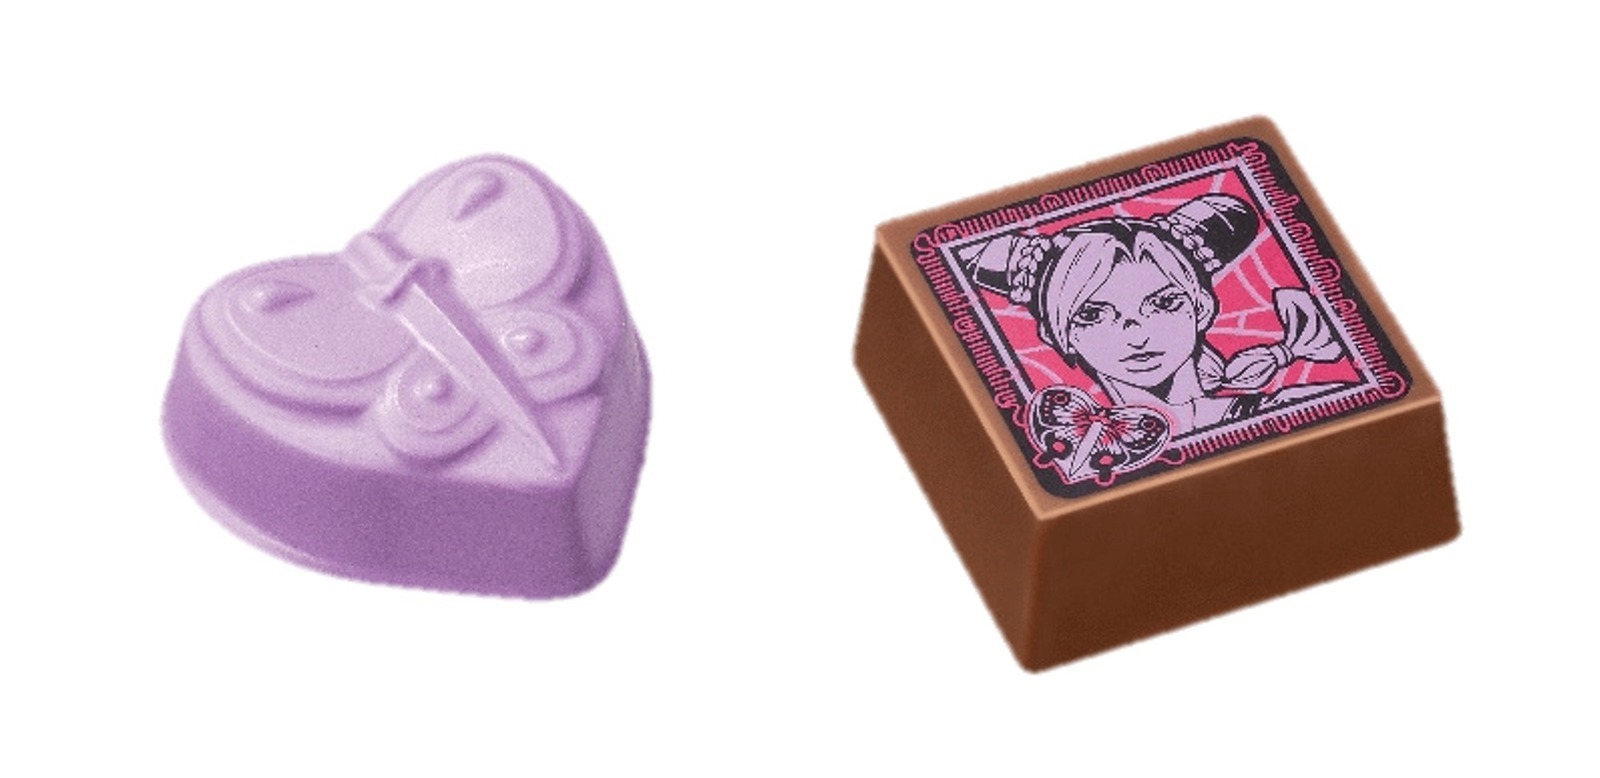 歌帝梵×JOJO十周年巧克力礼盒插图10